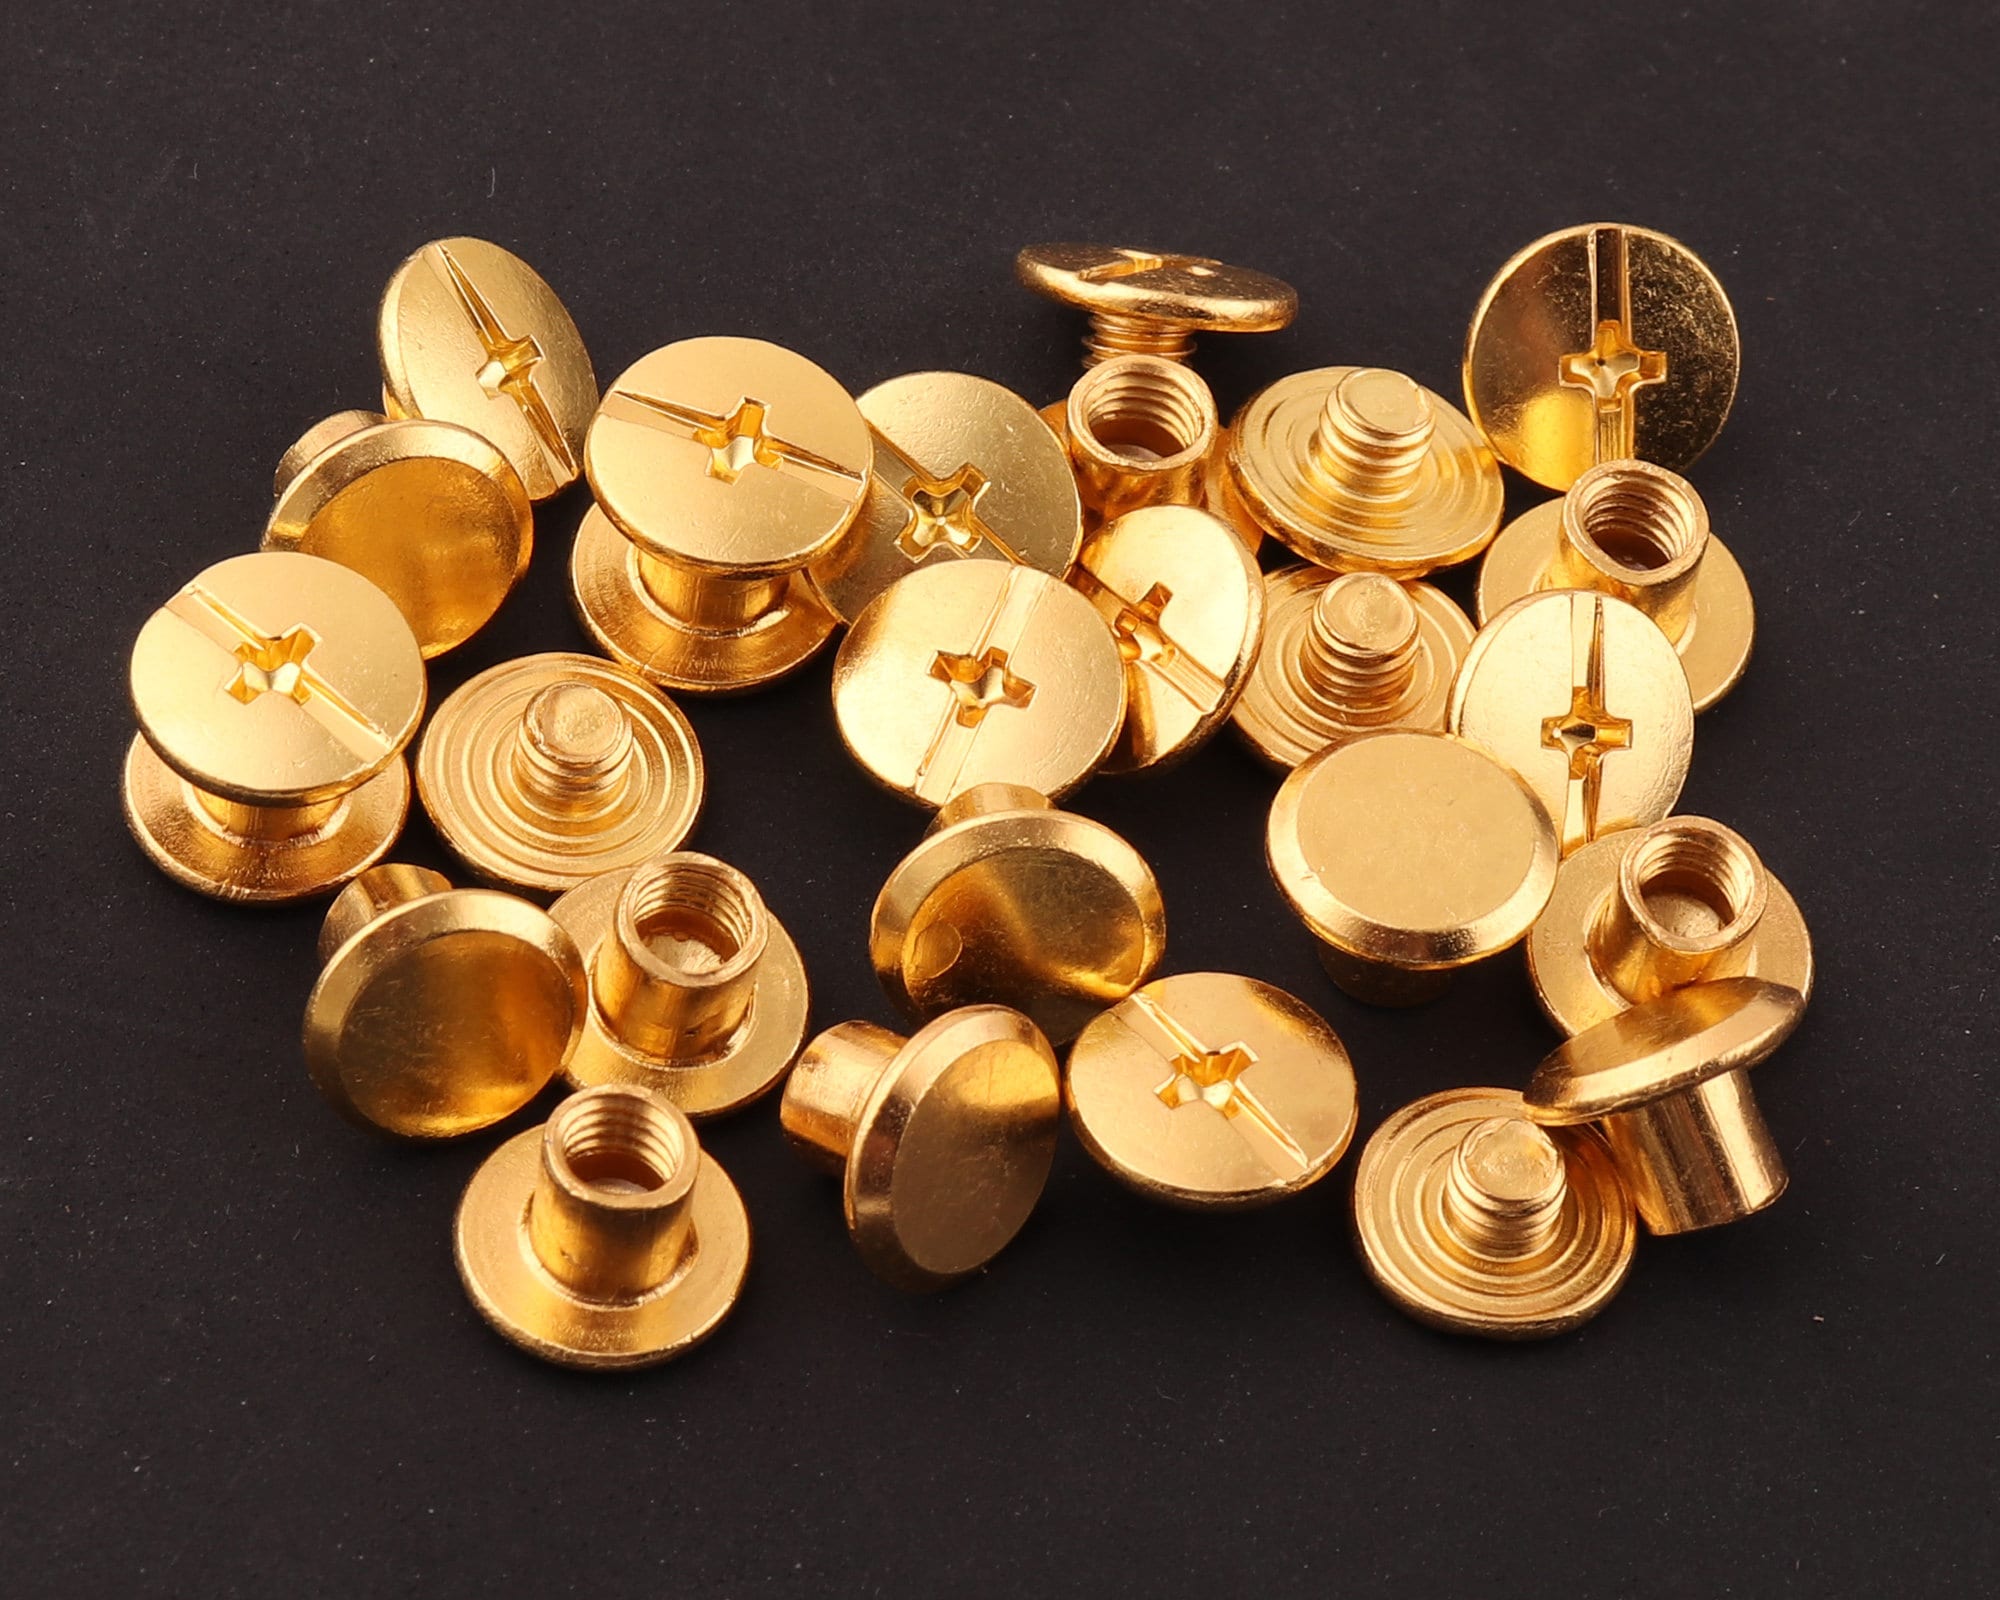 Authentic Louis Vuitton 10mm gold Snap Button Rivet For Replacement Parts